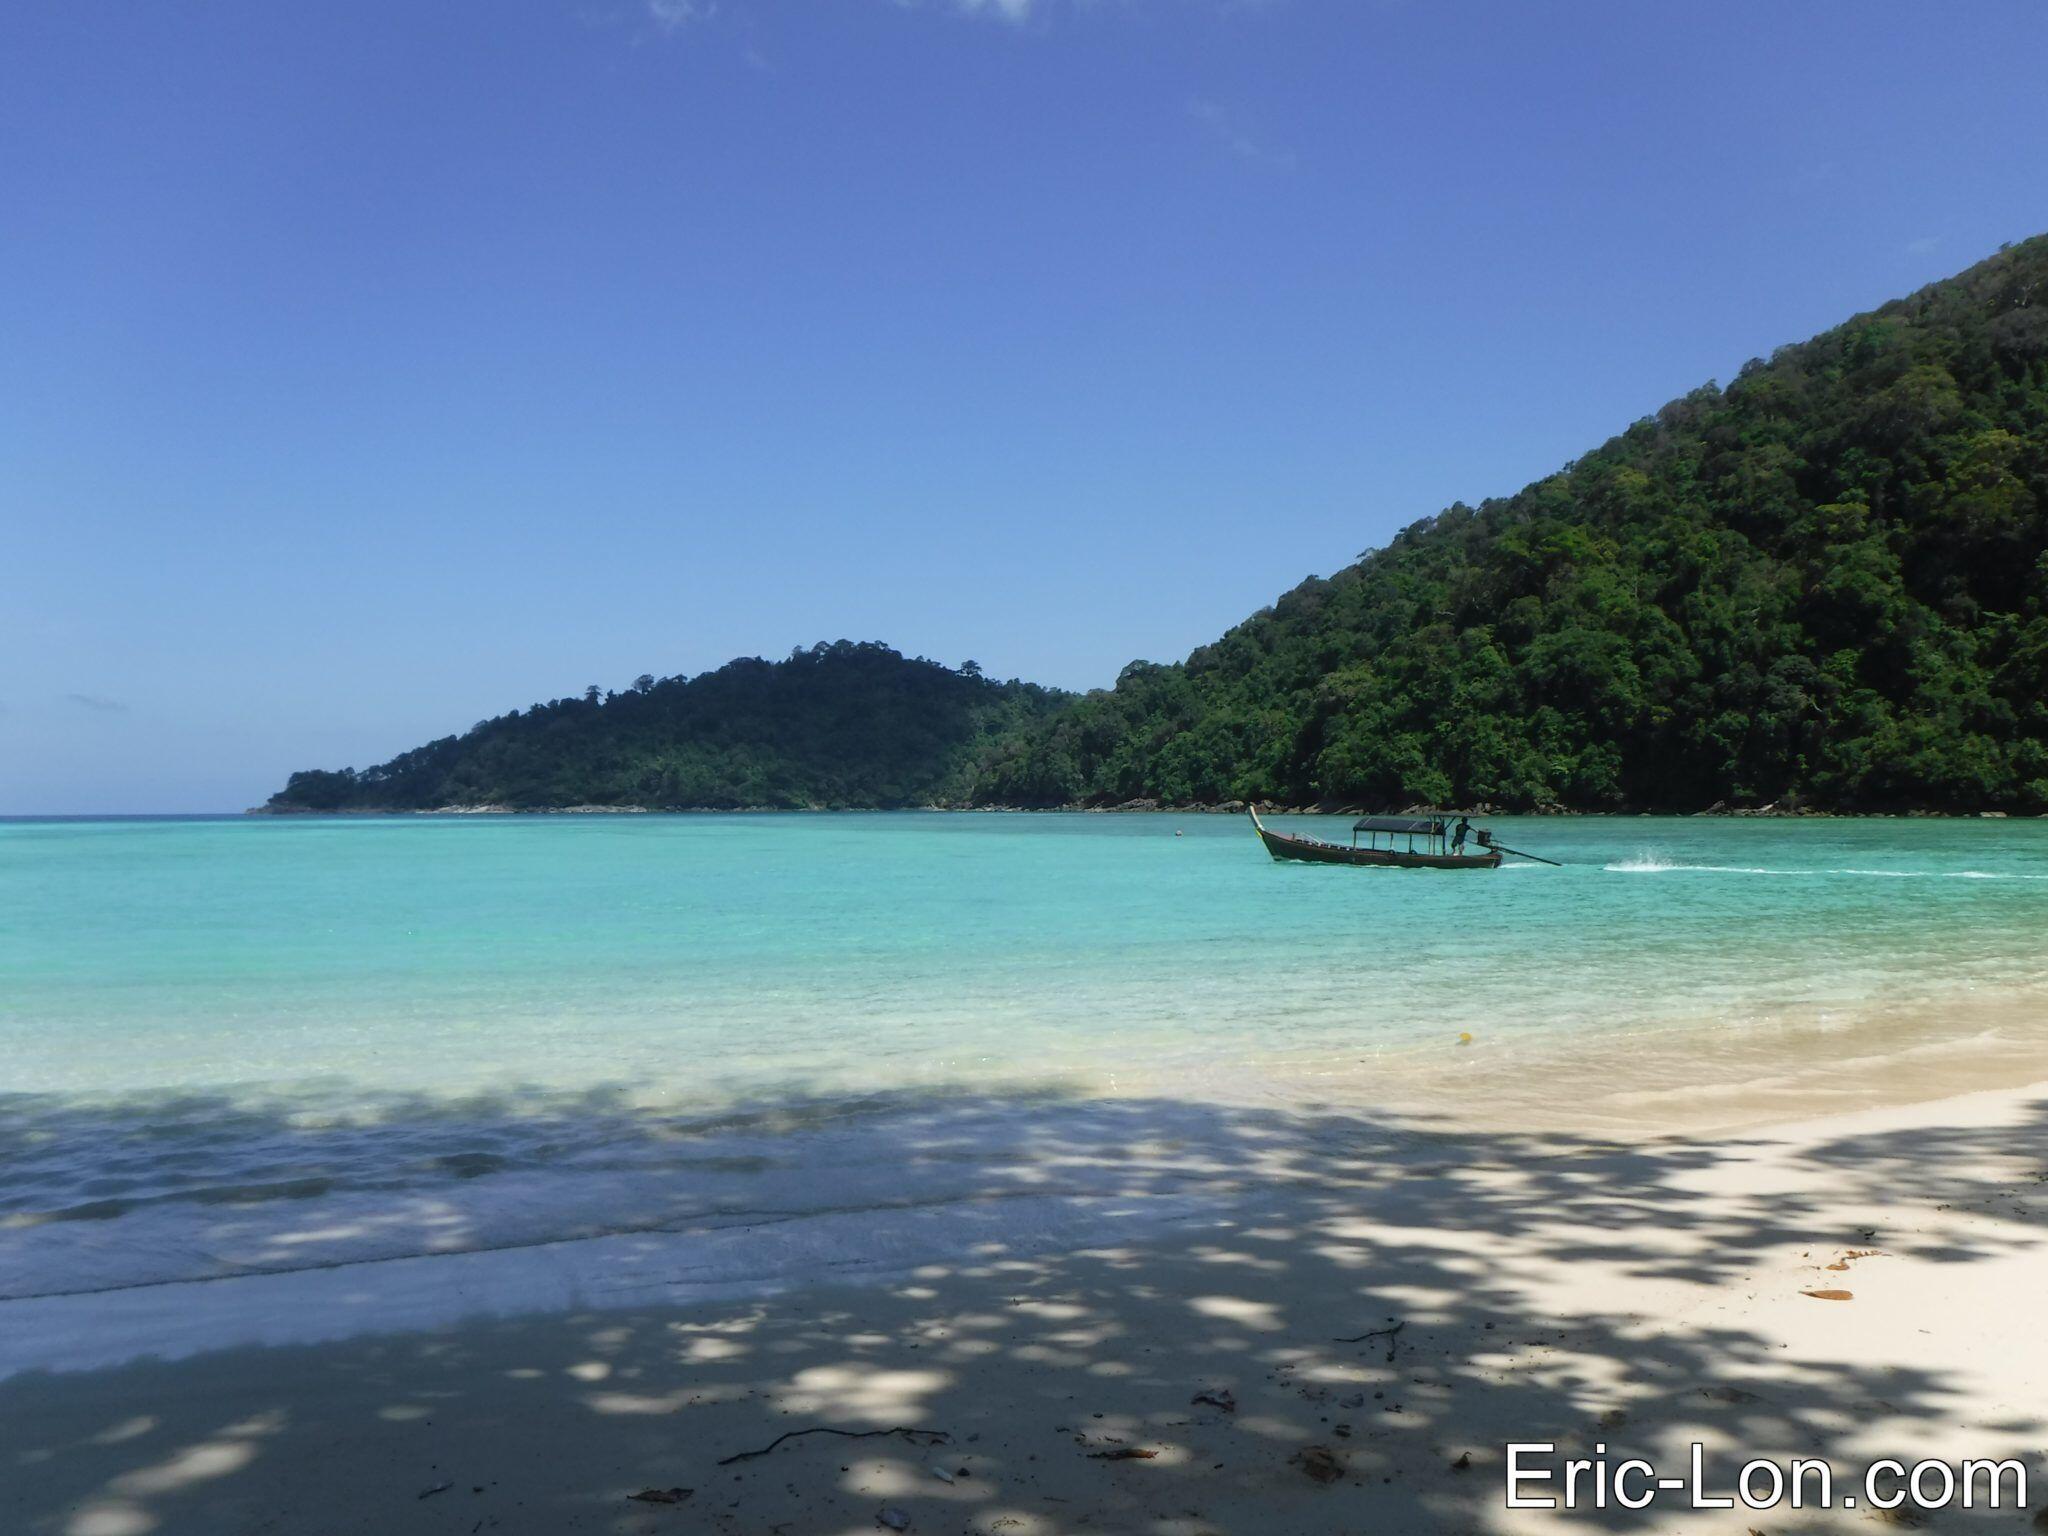 Les îles Surin sont des petits morceaux de Paradis tombés en Mer Andaman, plus loin que les îles Similan lorsqu’on vient de Phuket. Ce sont les premières îles protégées par les règles strictes des parcs nationaux que j’ai visités il y a quinze ans, lorsque j’ai commencé à ...